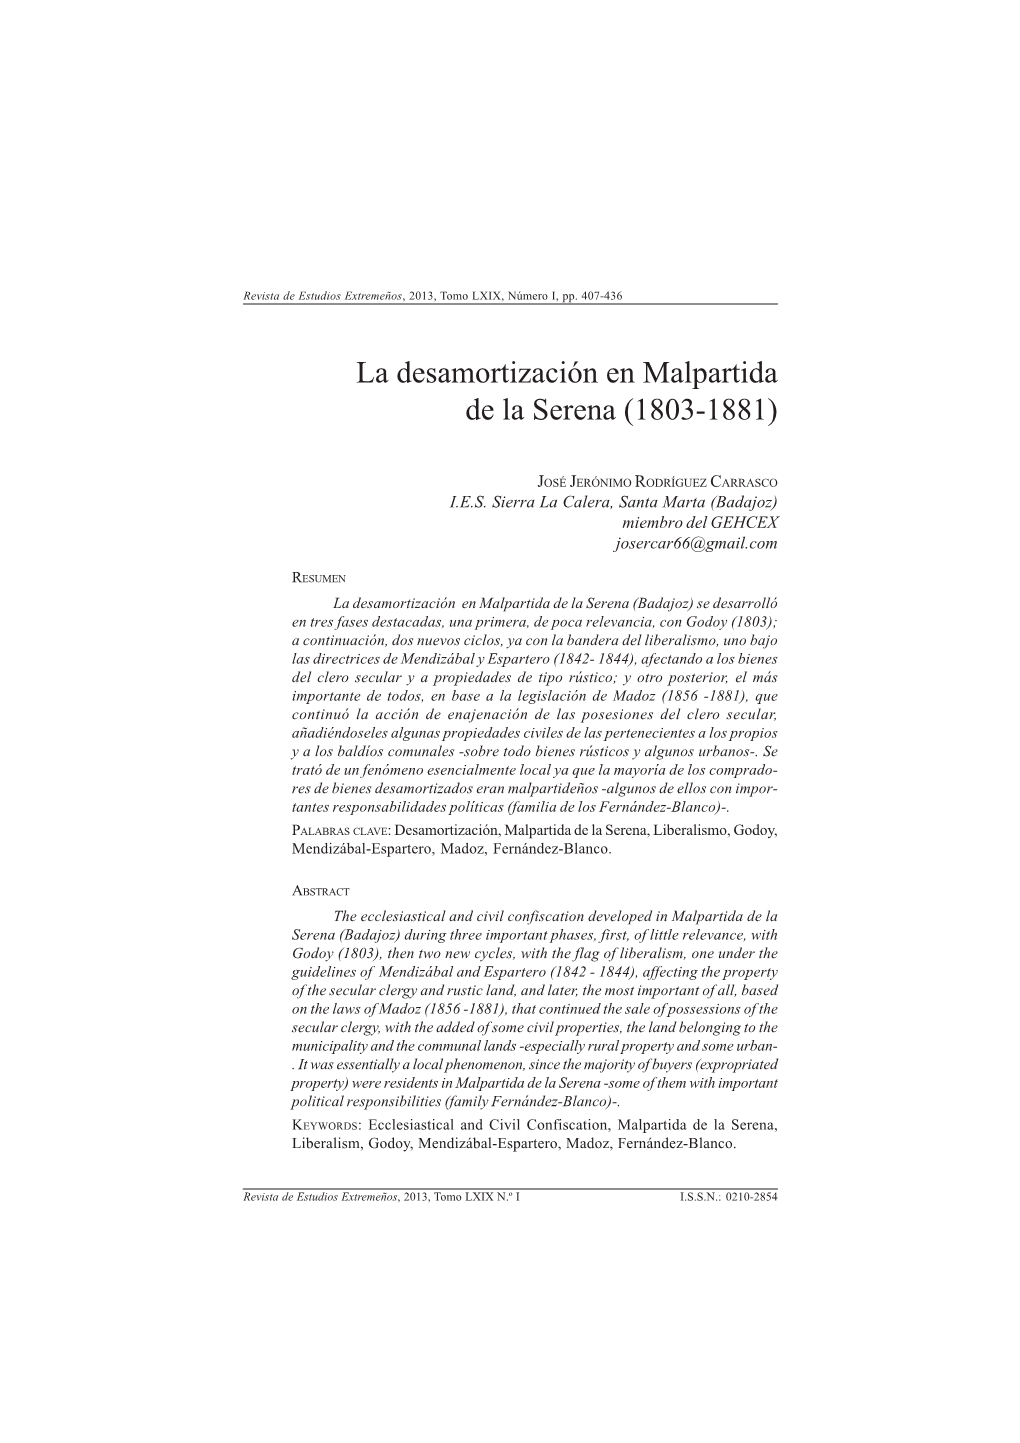 La Desamortización En Malpartida De La Serena (1803-1881)